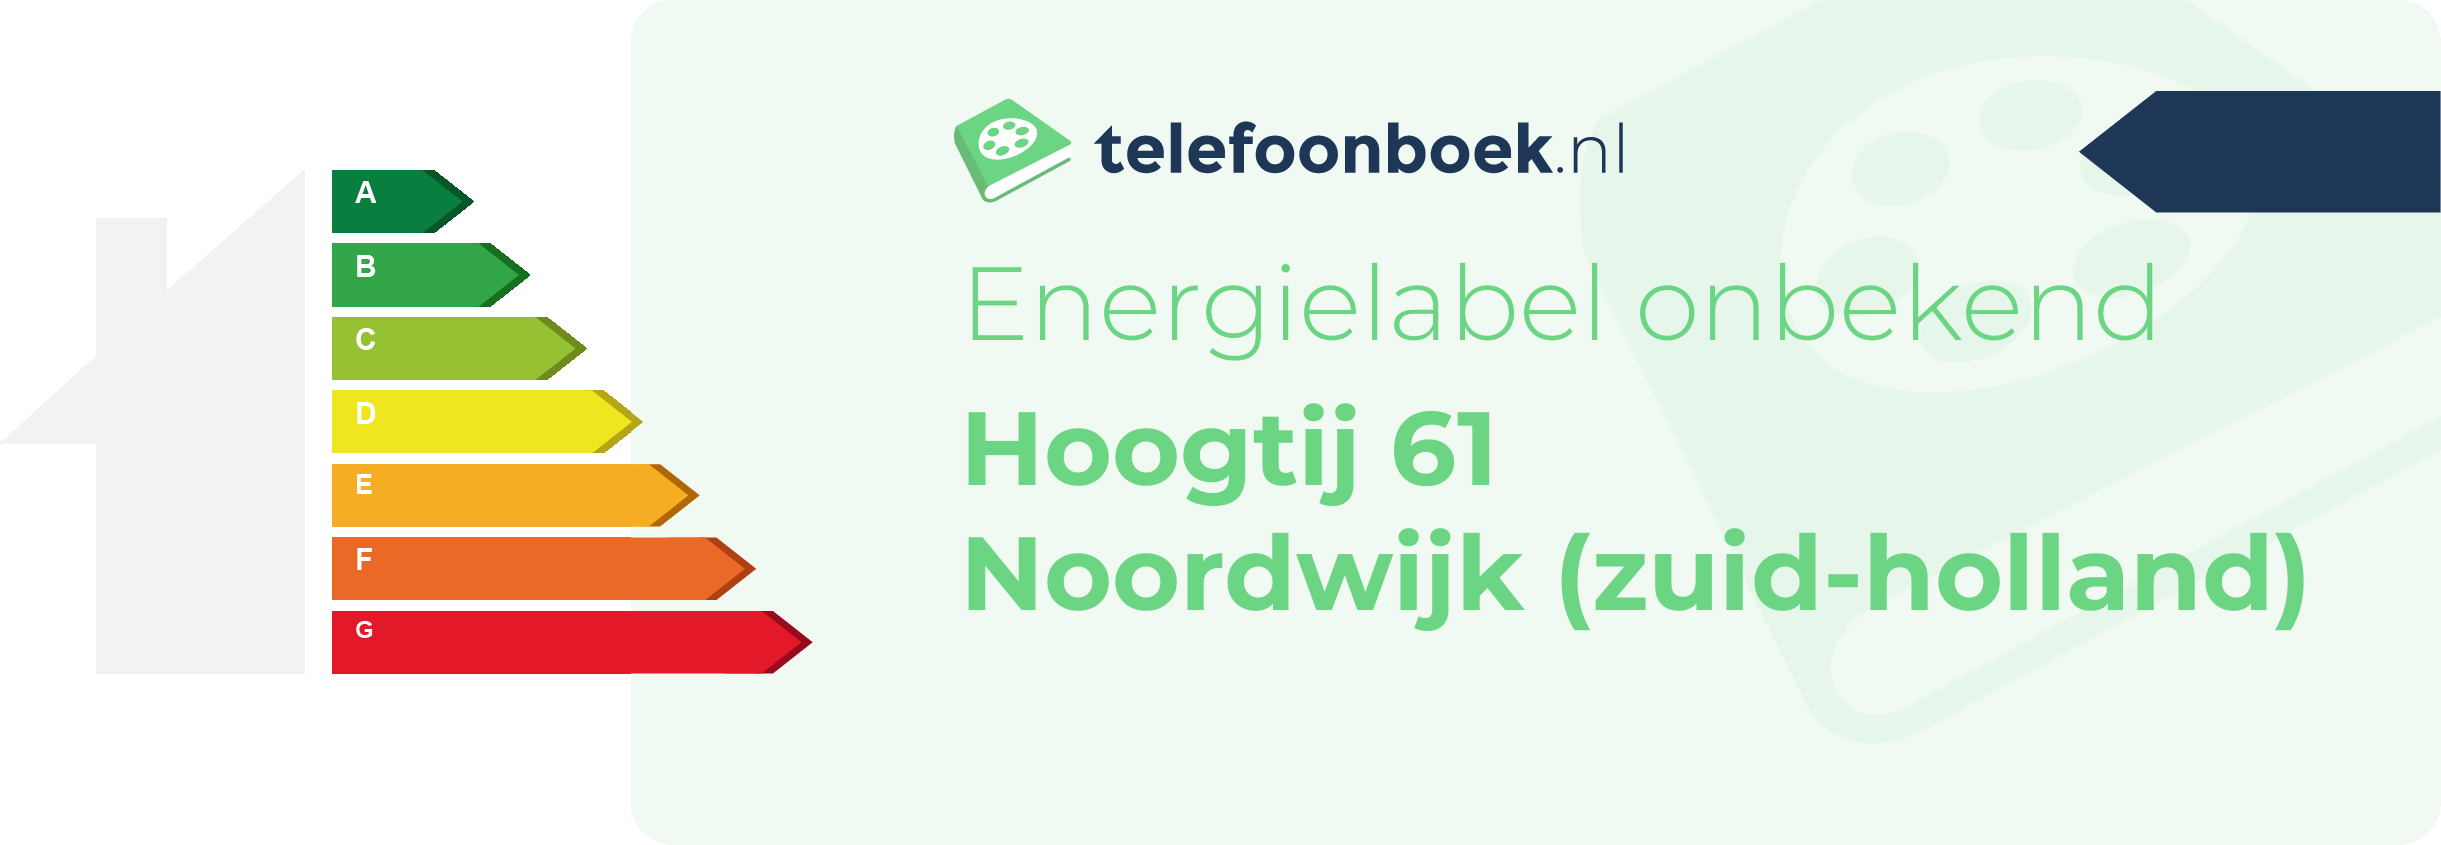 Energielabel Hoogtij 61 Noordwijk (Zuid-Holland)